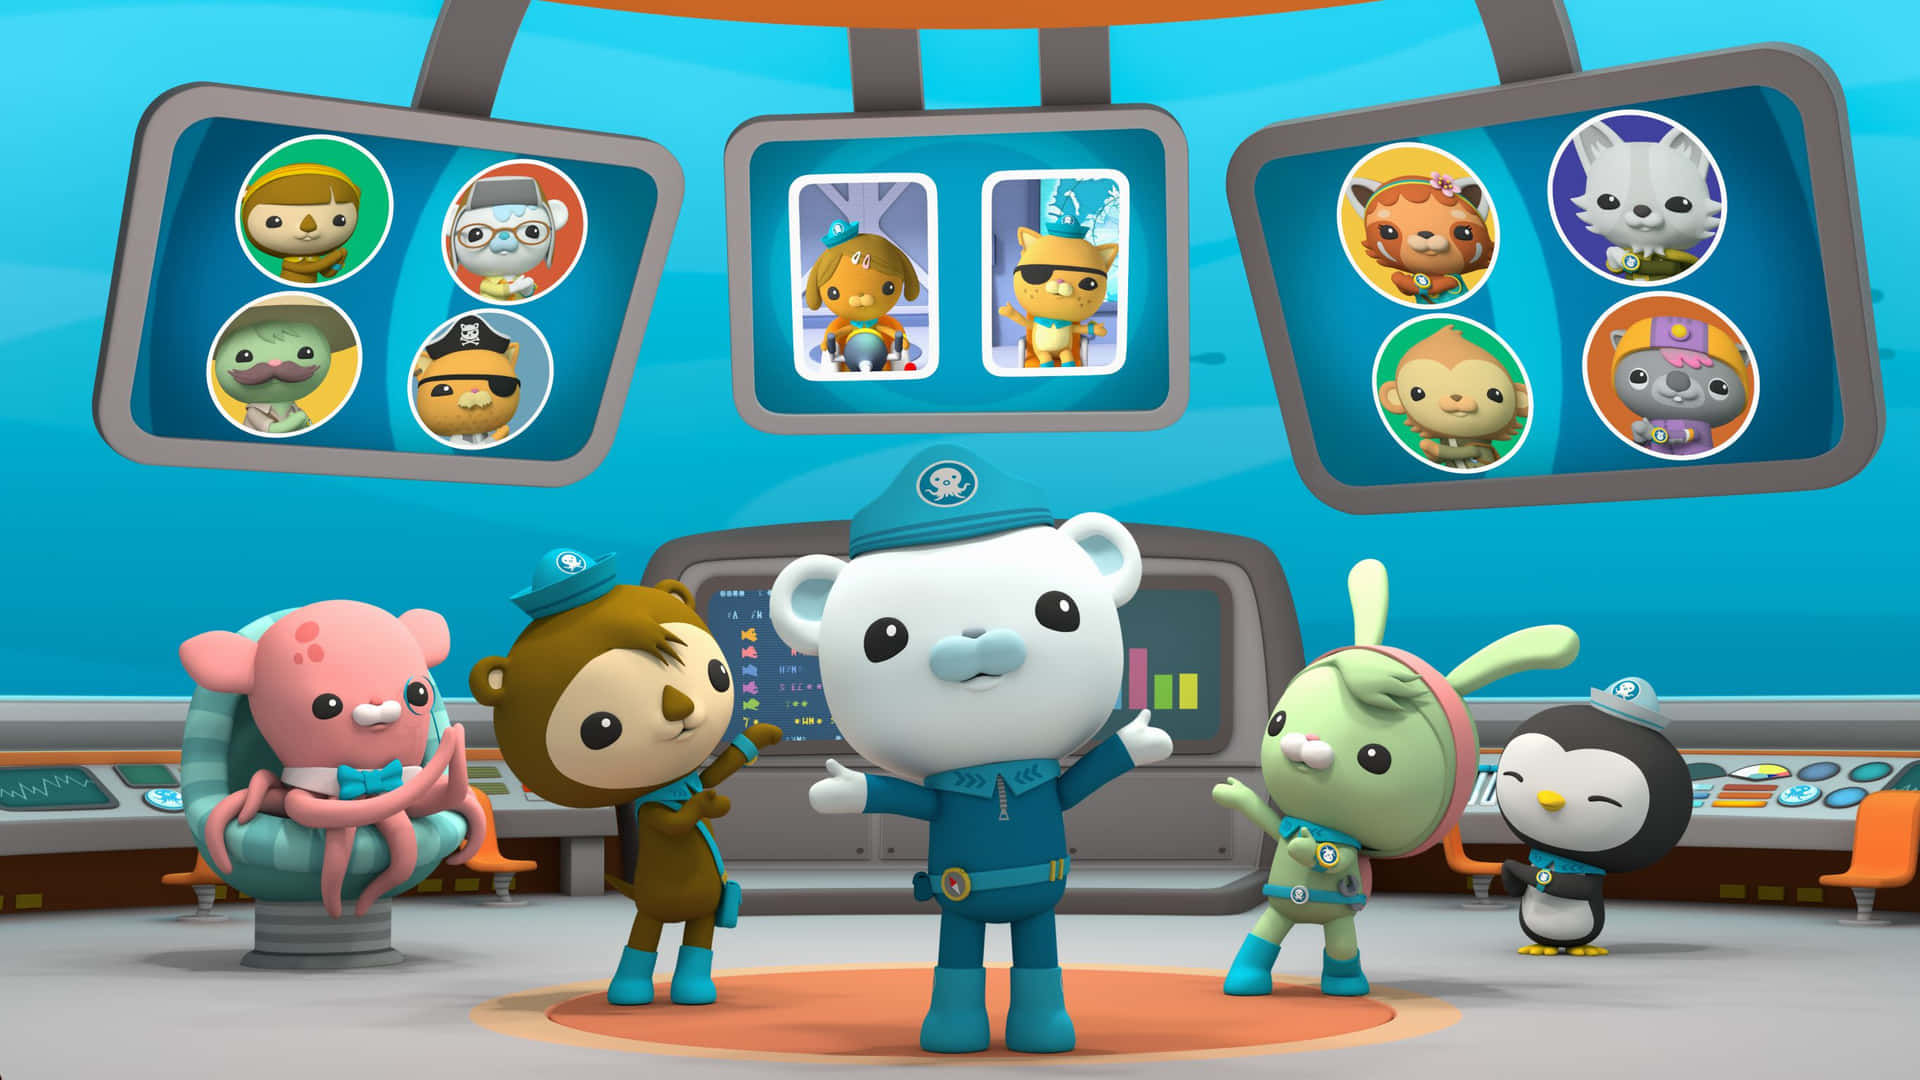 Einegruppe Von Cartoon-charakteren In Einer Weltraumstation. Wallpaper